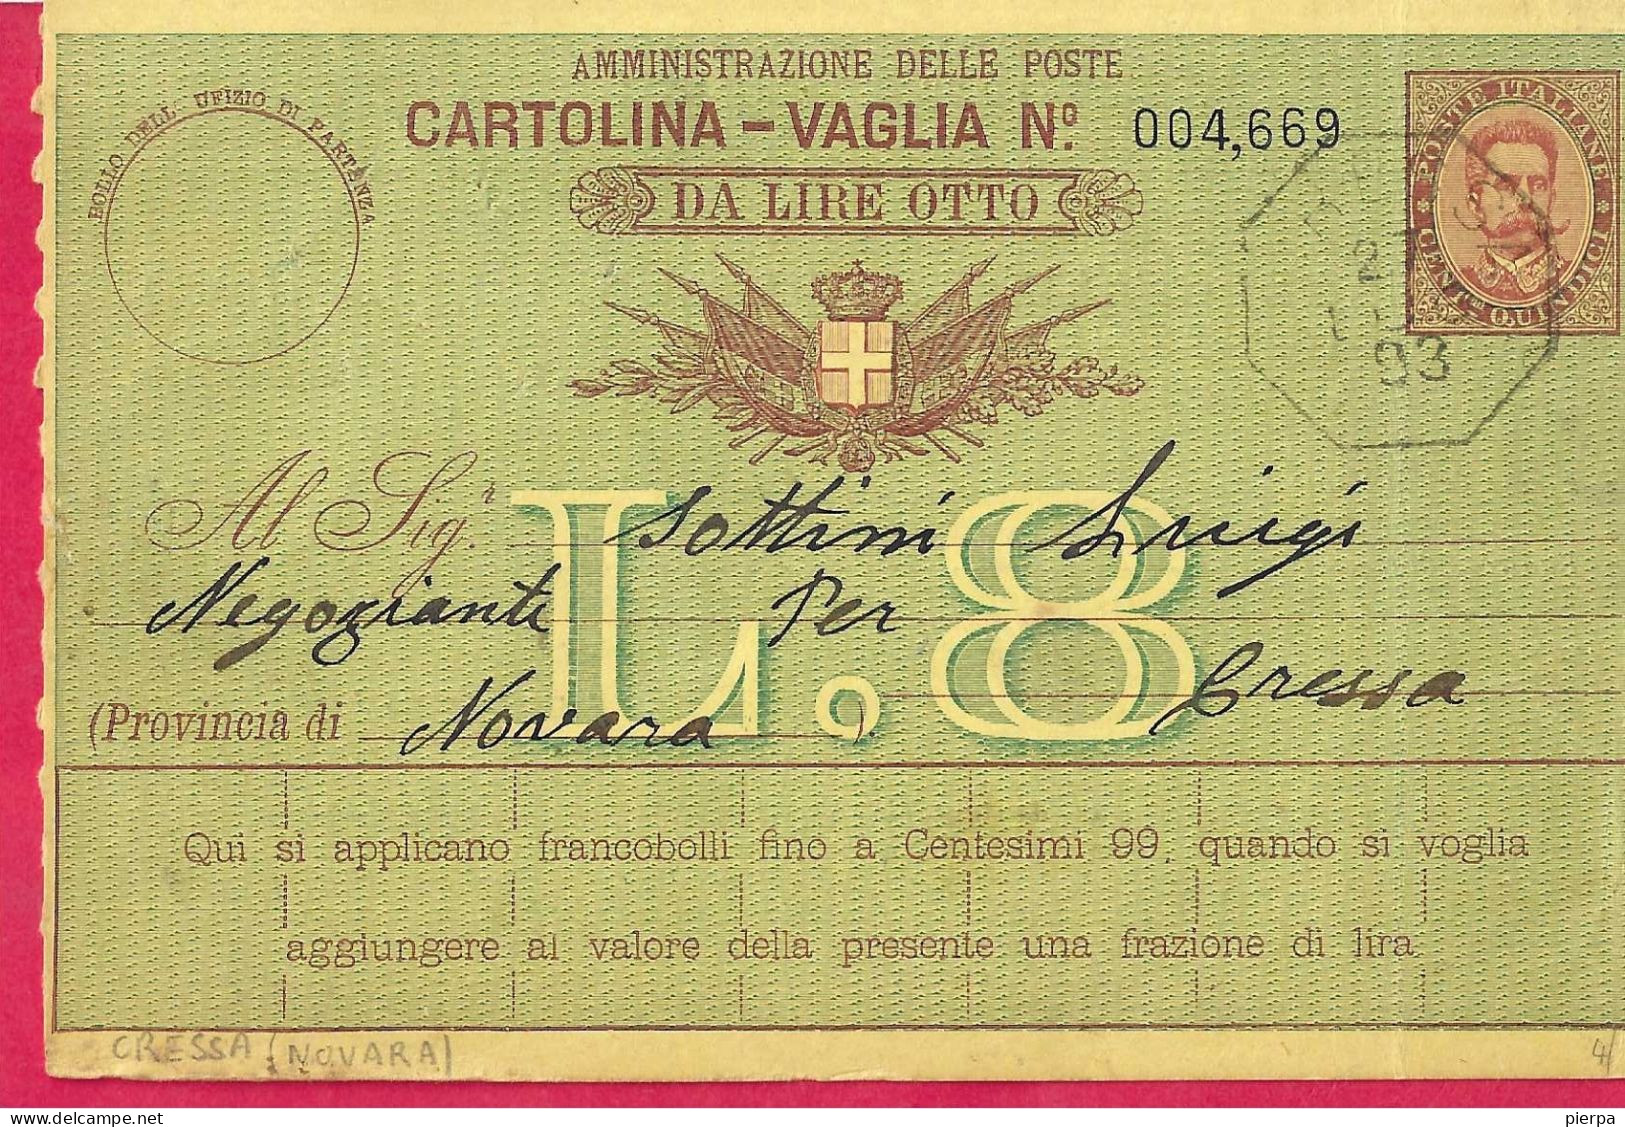 INTERO CARTOLINA-VAGLIA UMBERTO C.15 DA LIRE 8 (CAT. INT.12) -COLLETTORIA "CRESSA *27.LUG.93* DA GRUMELLO DEL MONTE - Marcophilia